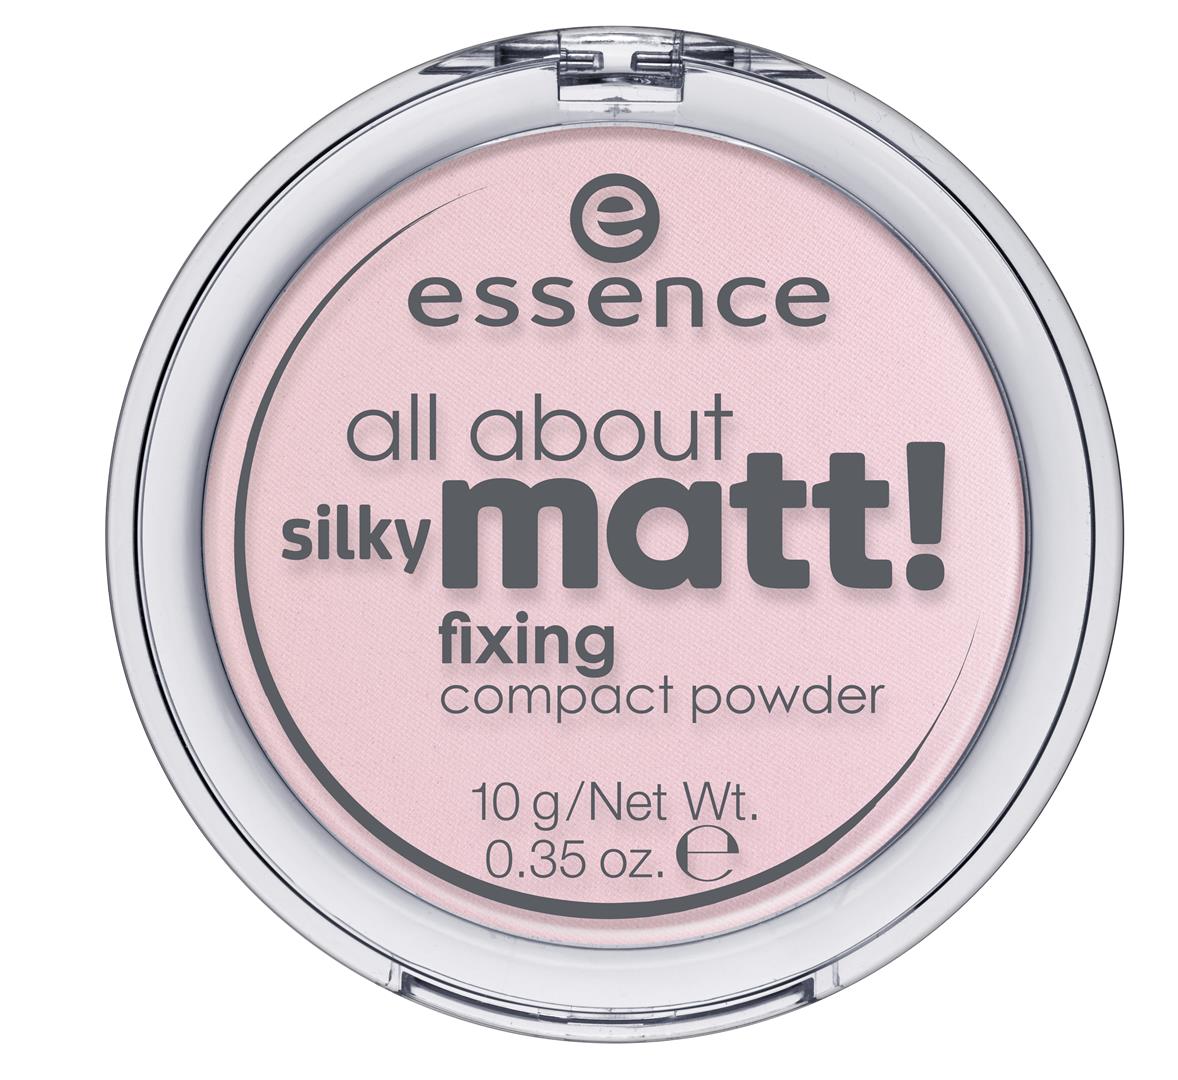 ess. all about silky matt! fixing compact powder 10